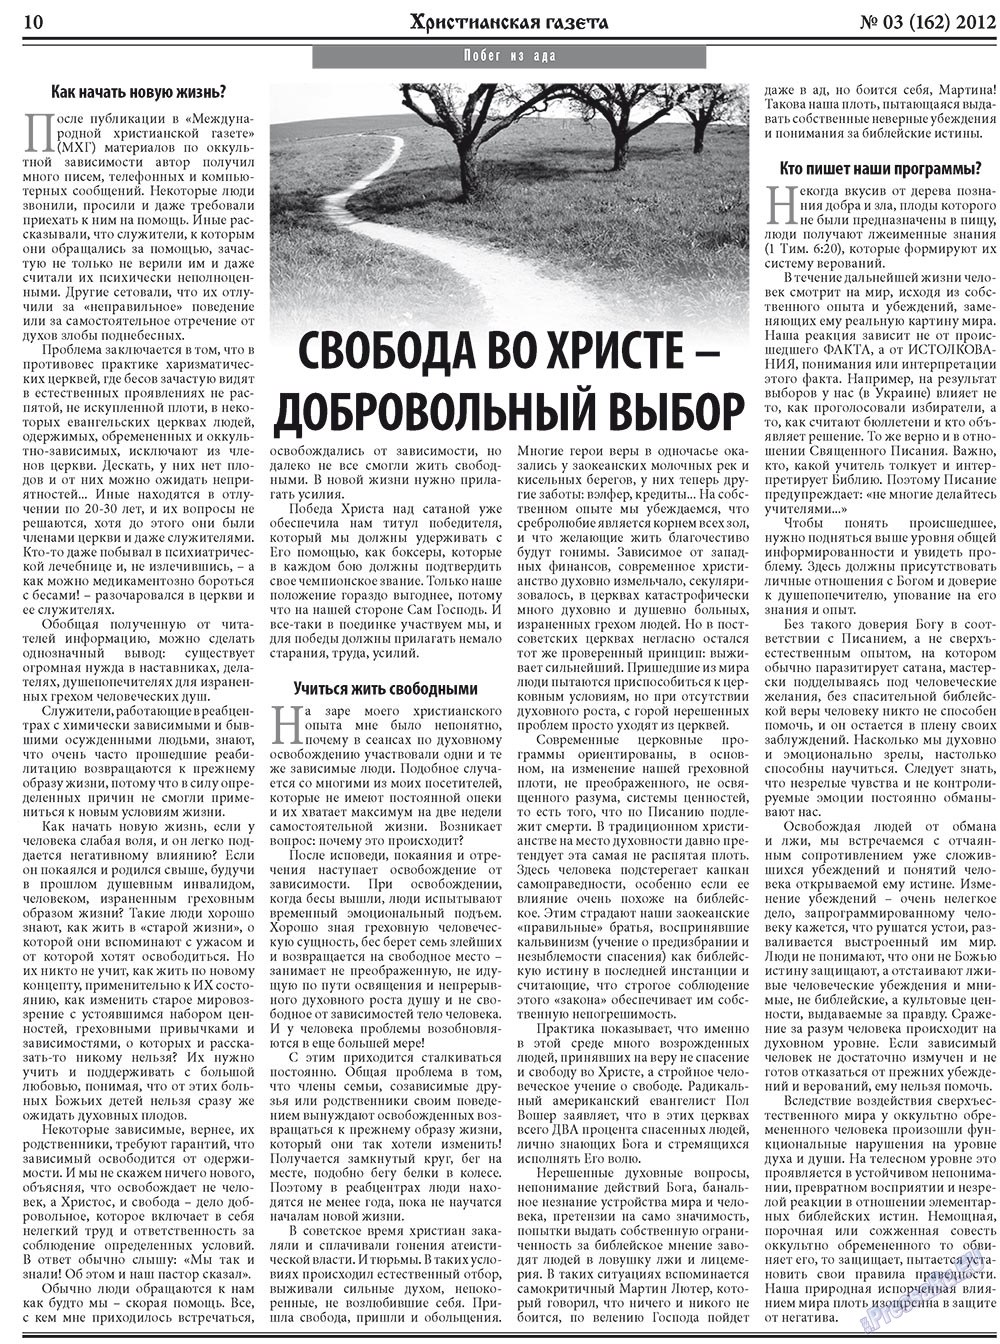 Христианская газета, газета. 2012 №3 стр.10